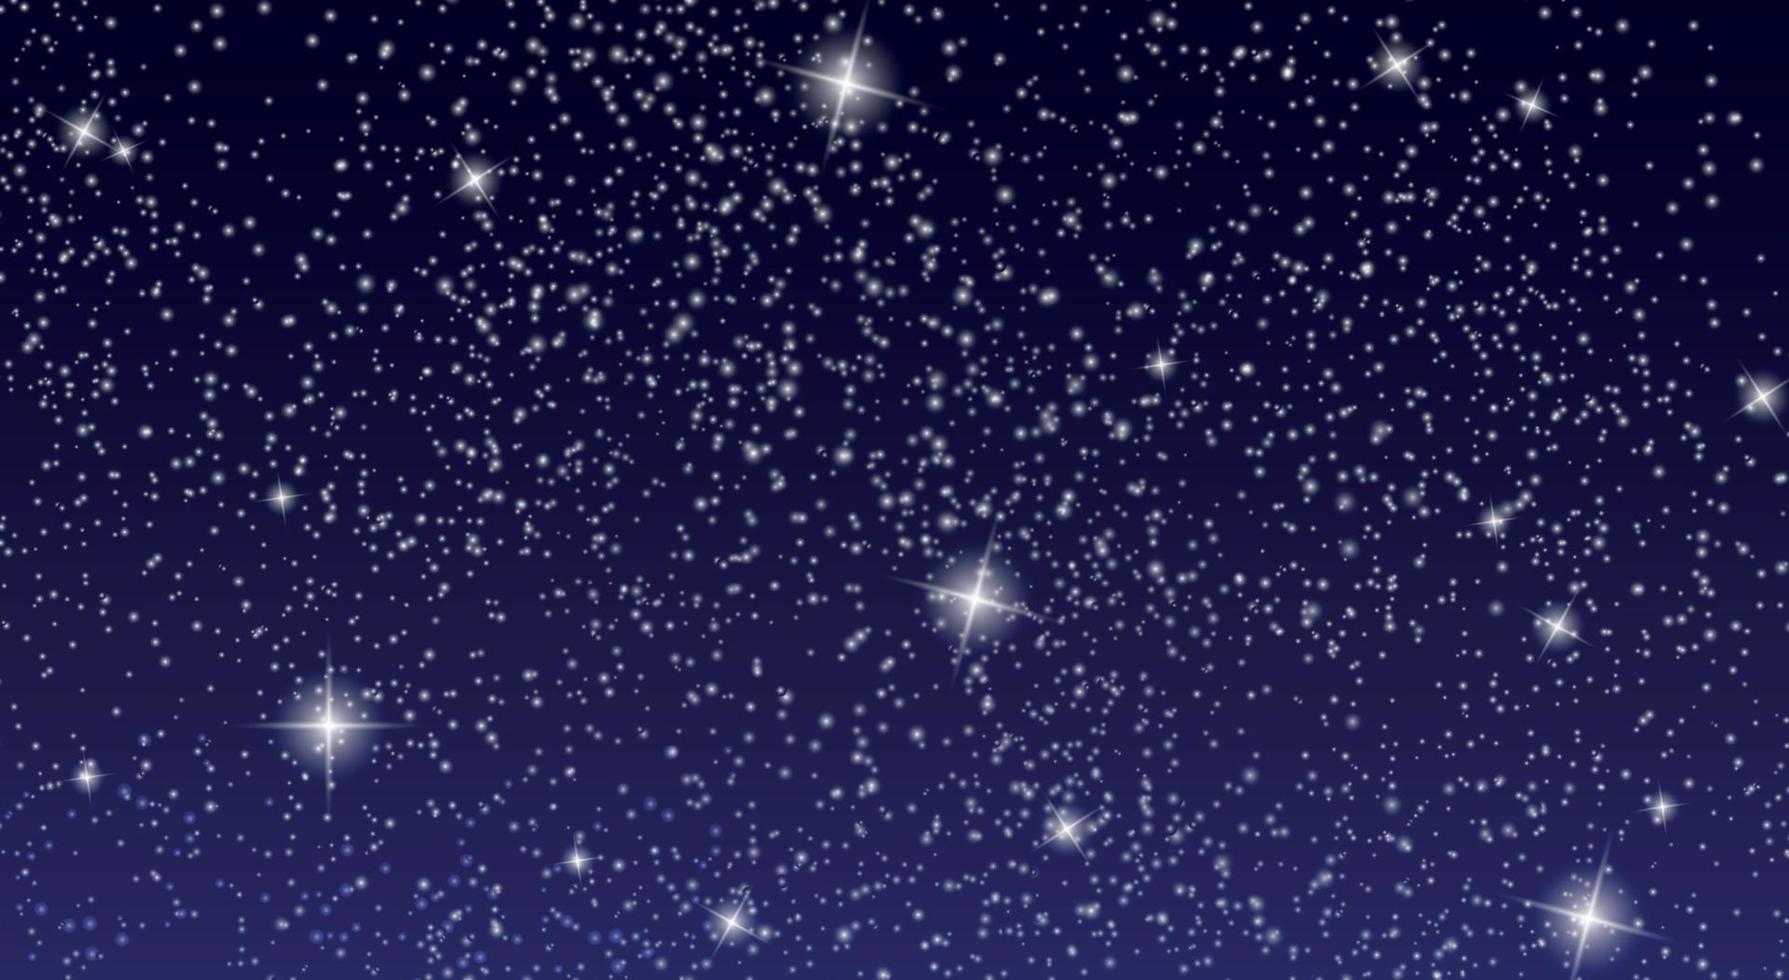 céu estrelado realista com estrelas brilhantes no céu noturno. ilustração vetorial vetor